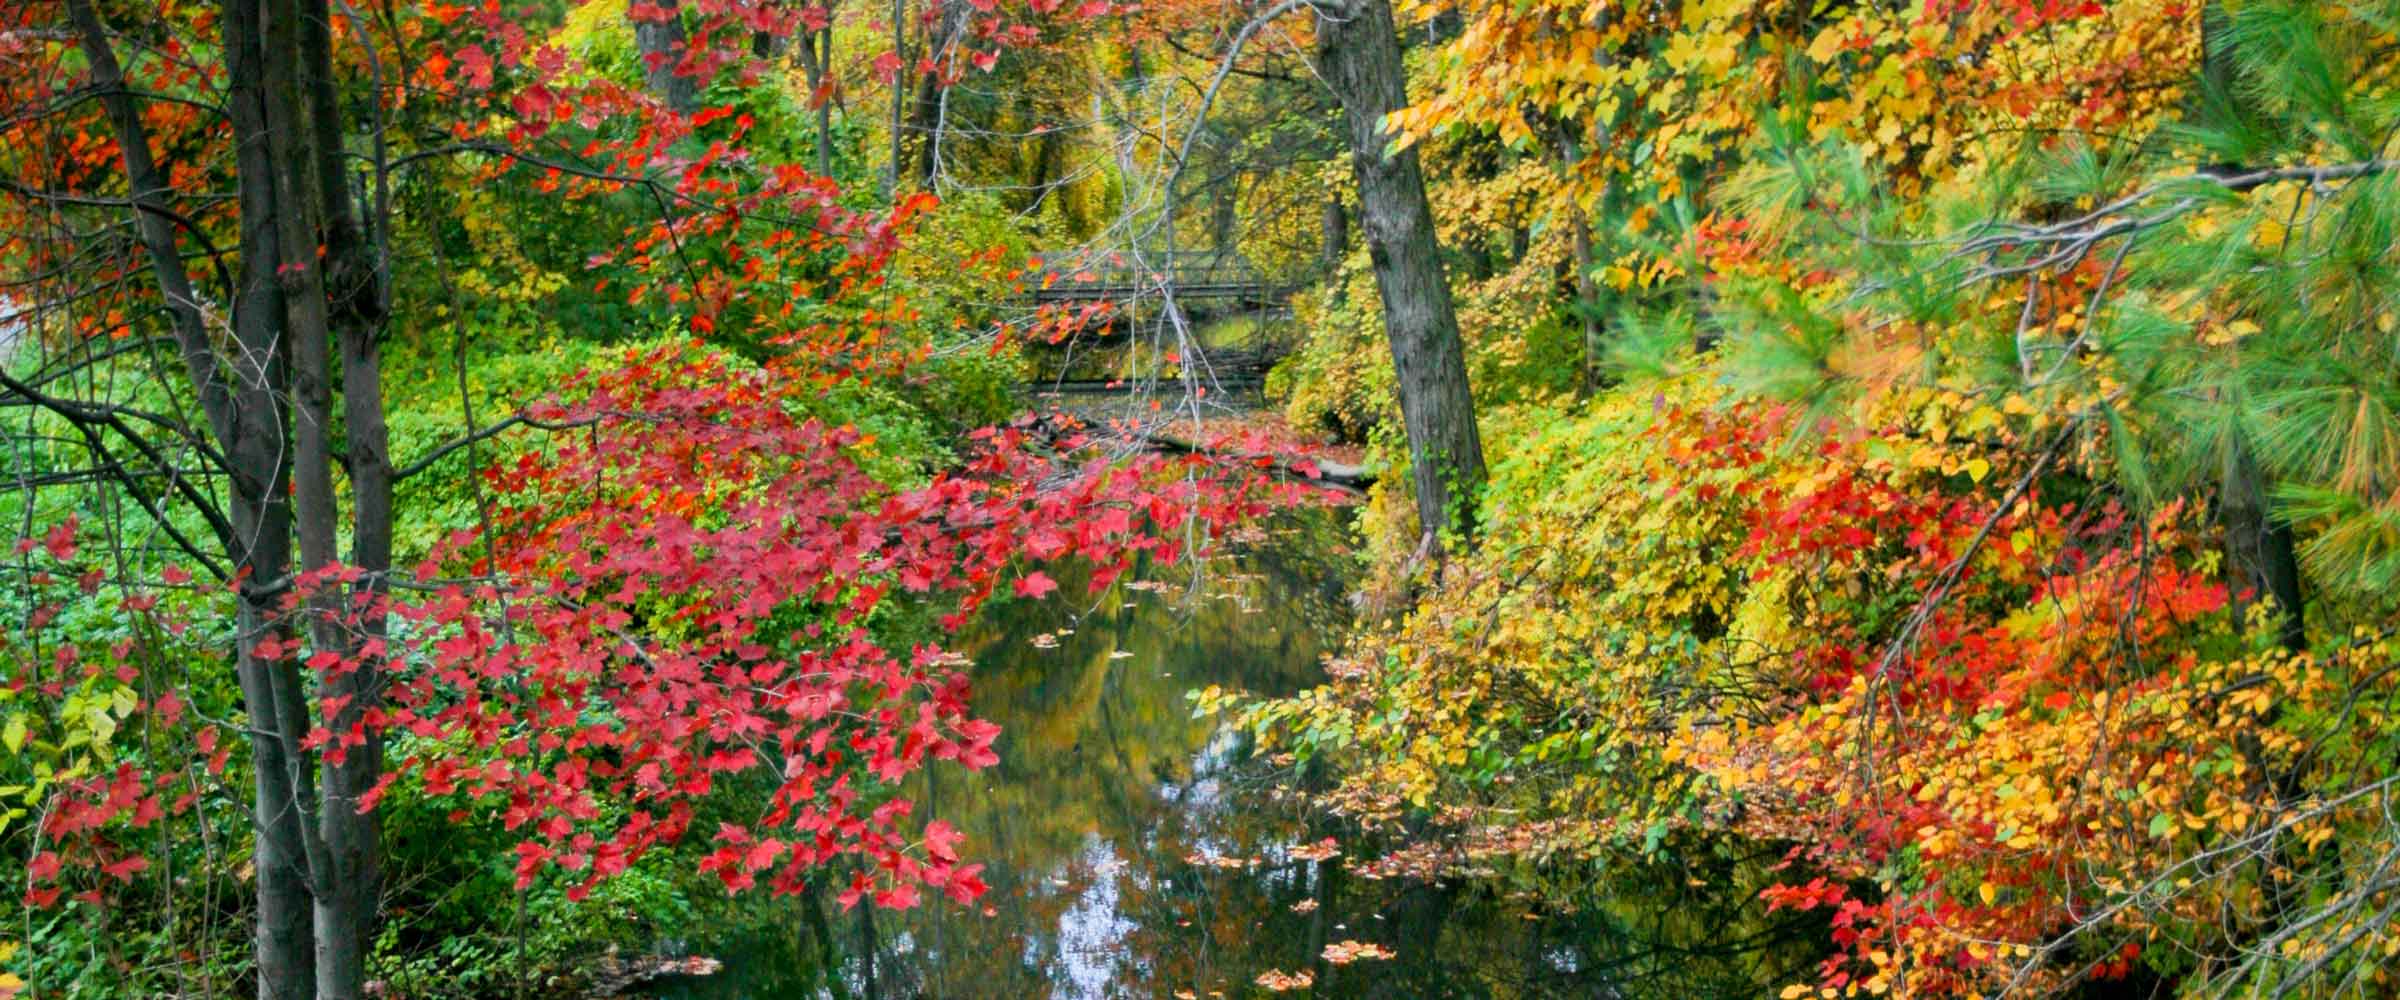 Fall foliage over a creek